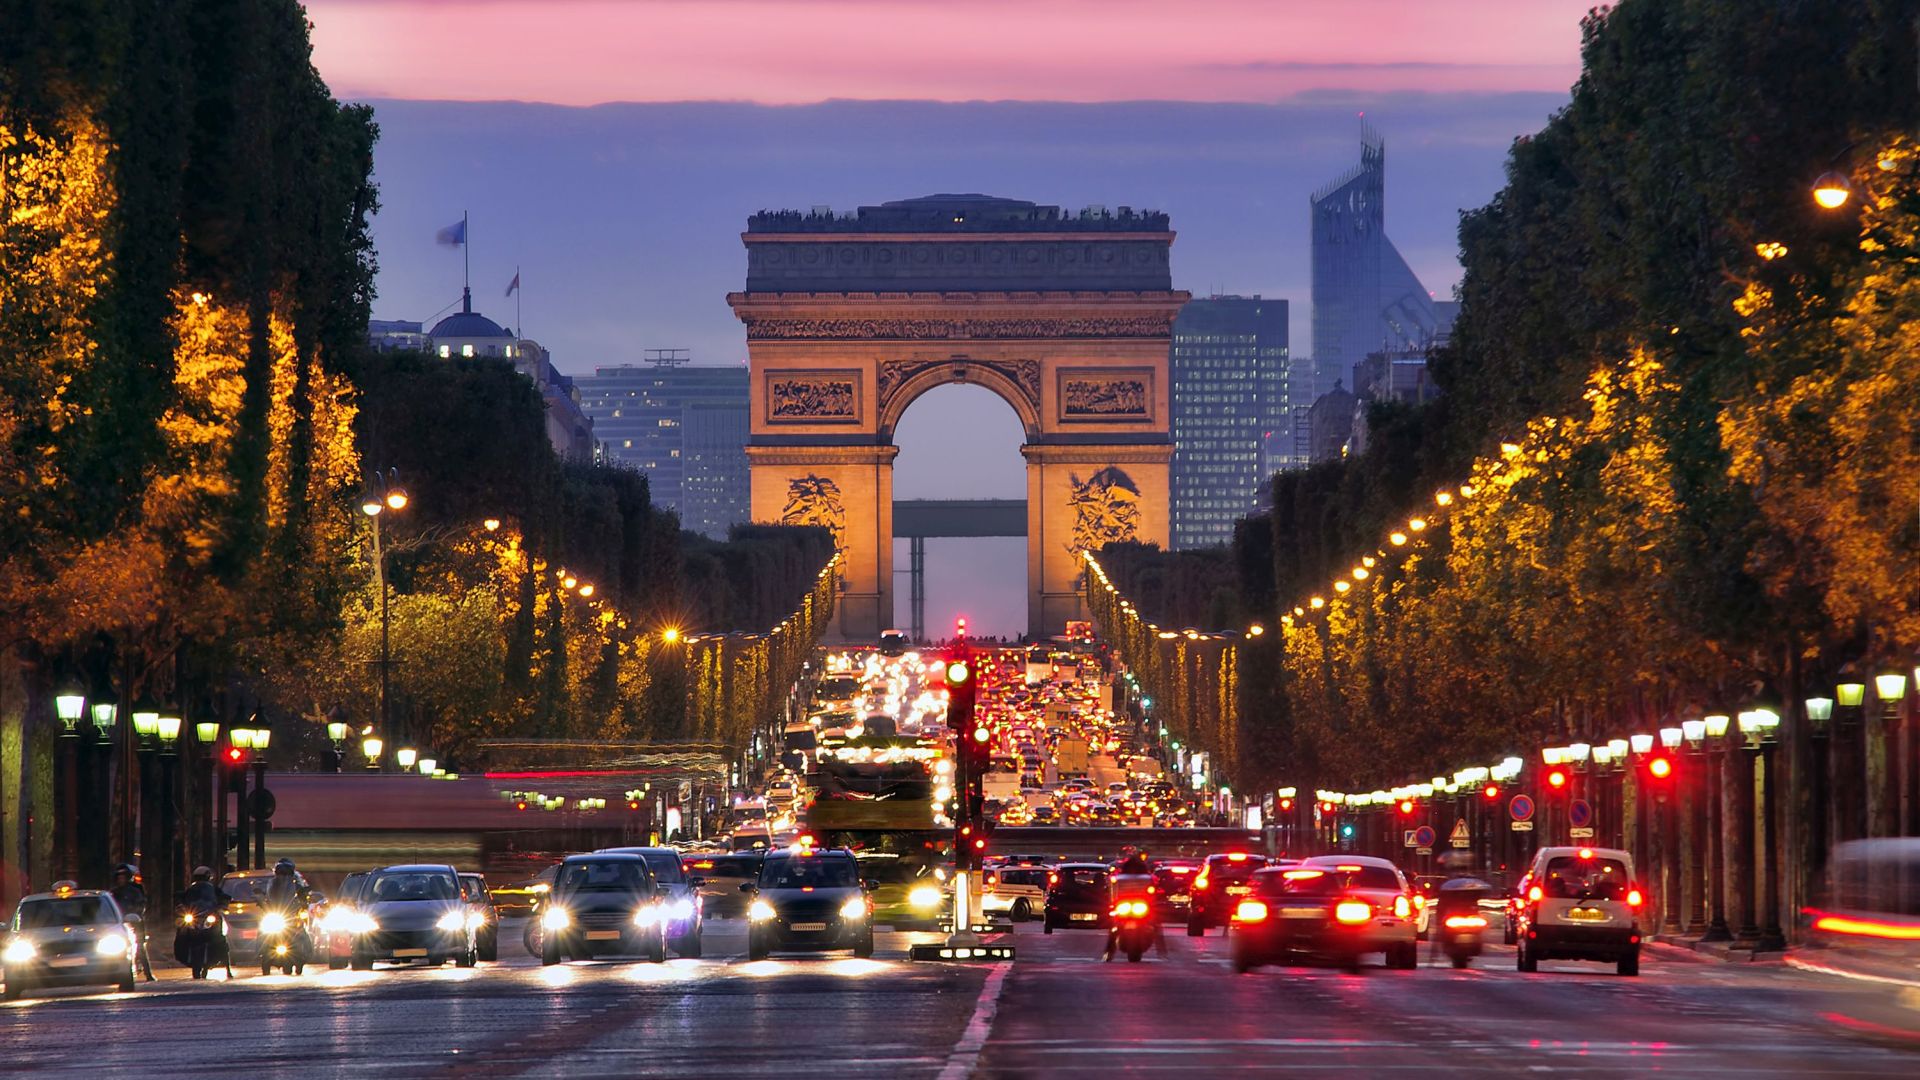 Paris_Arc de Triomphe_traffic_night